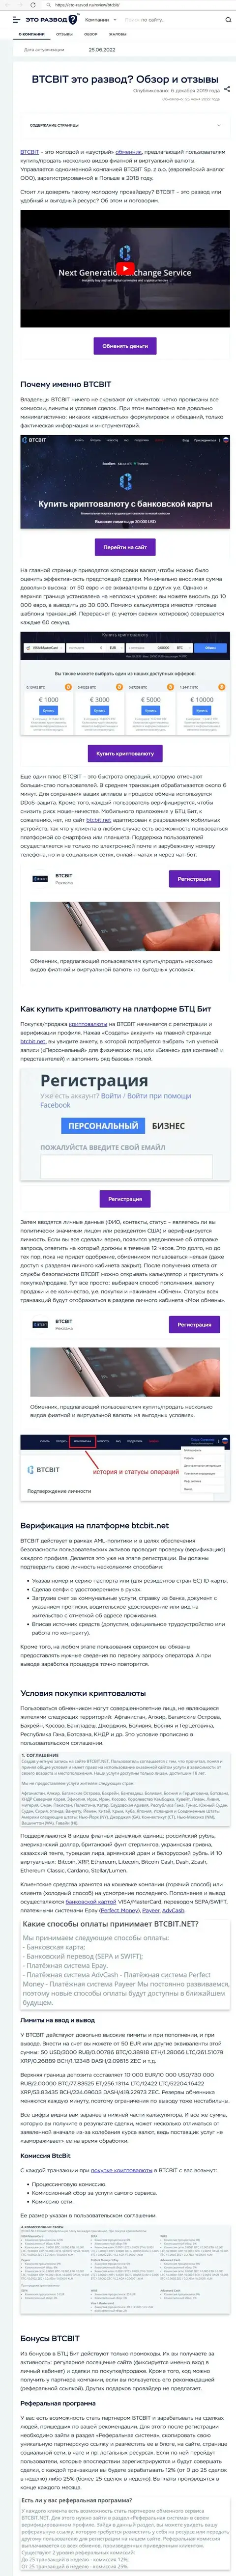 Анализ деятельности и условия работы обменного online-пункта БТК Бит в информационном материале на сайте Eto Razvod Ru